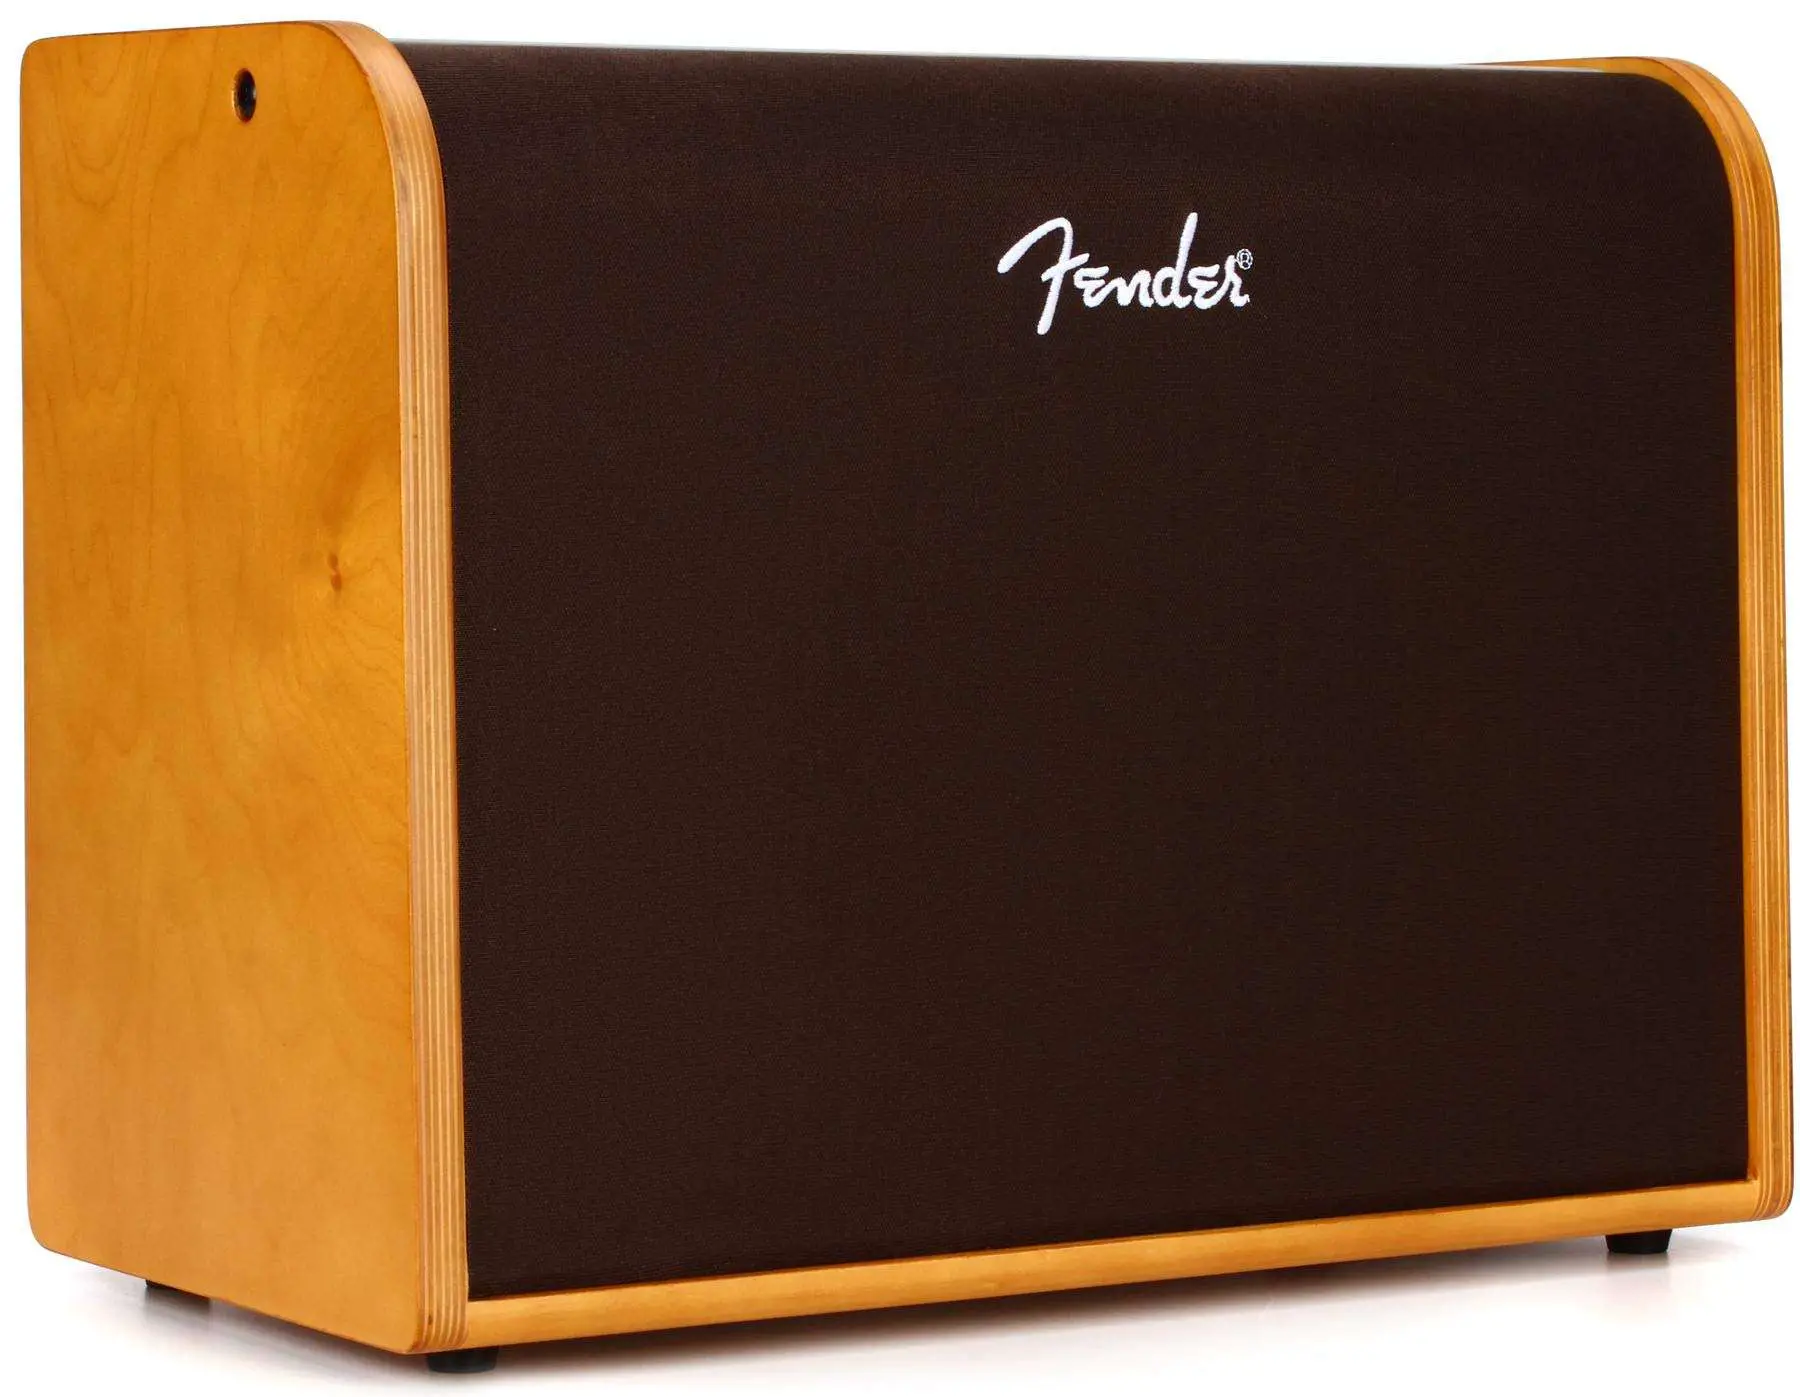 Fender Acoustic 100 Amplifier